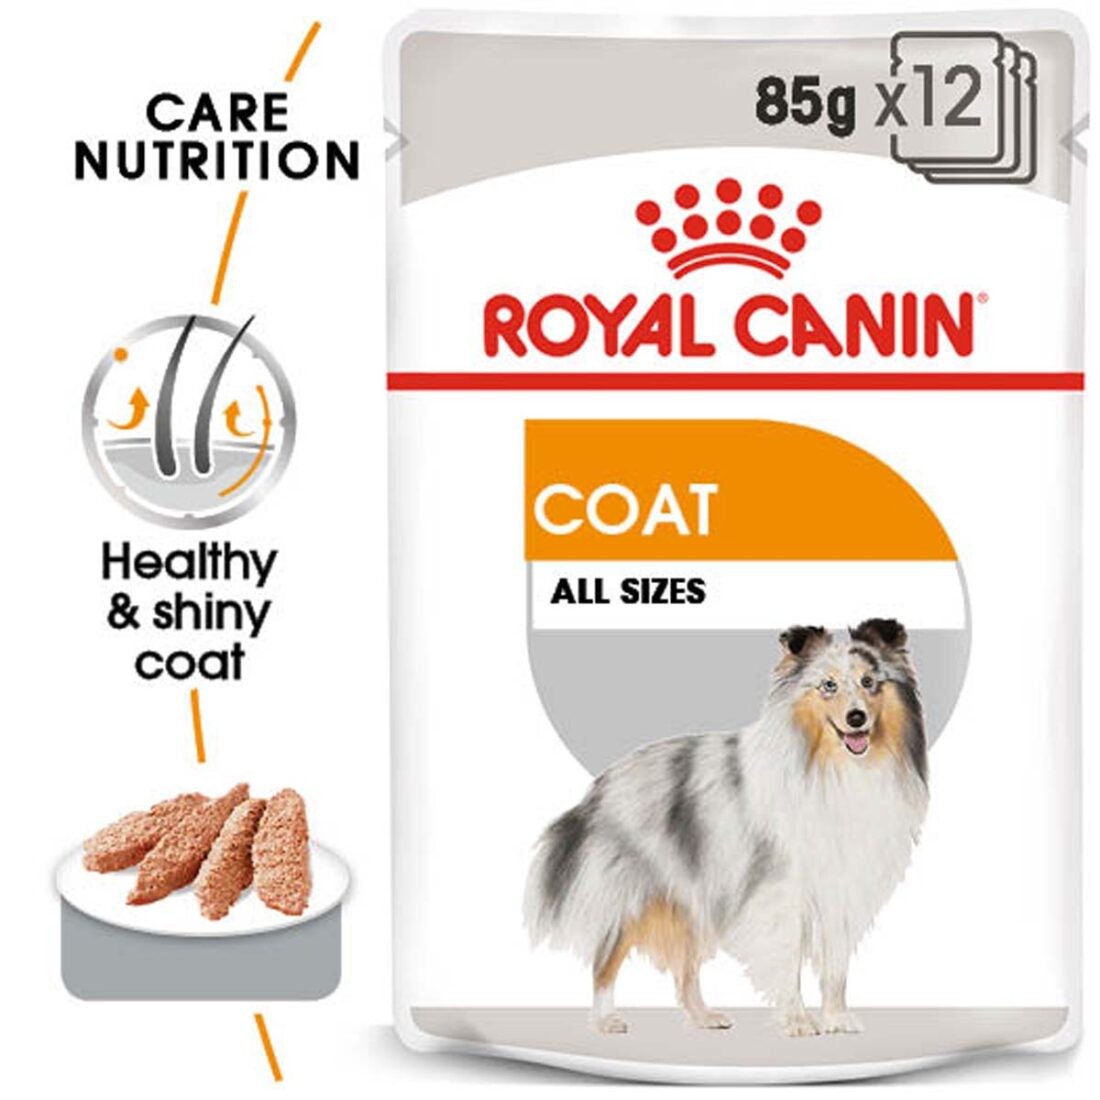 ROYAL CANIN COAT CARE kapsička pro lesklou